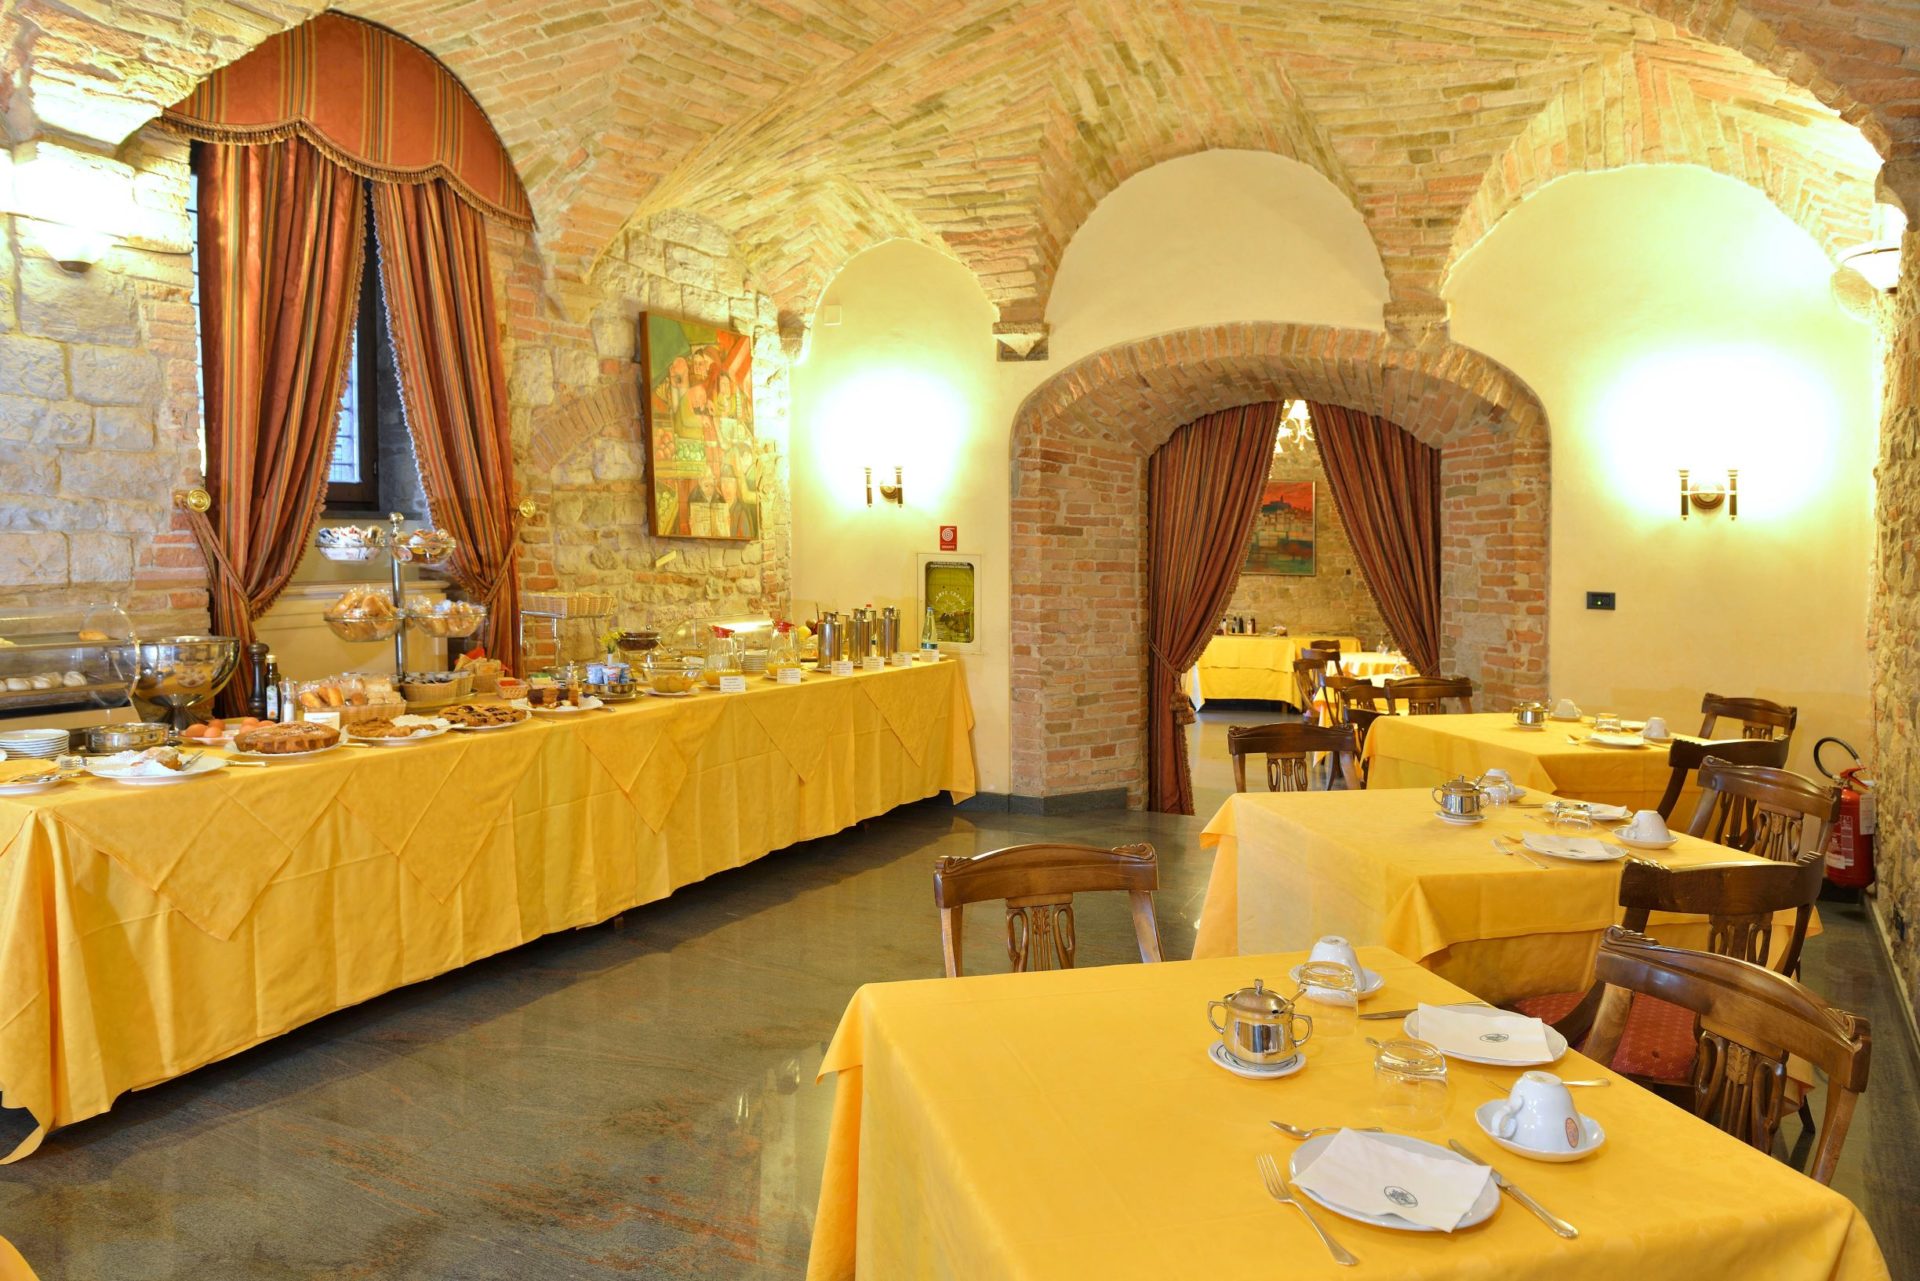 Hotel Fonte Cesia - breakfast - Sala Colazioni